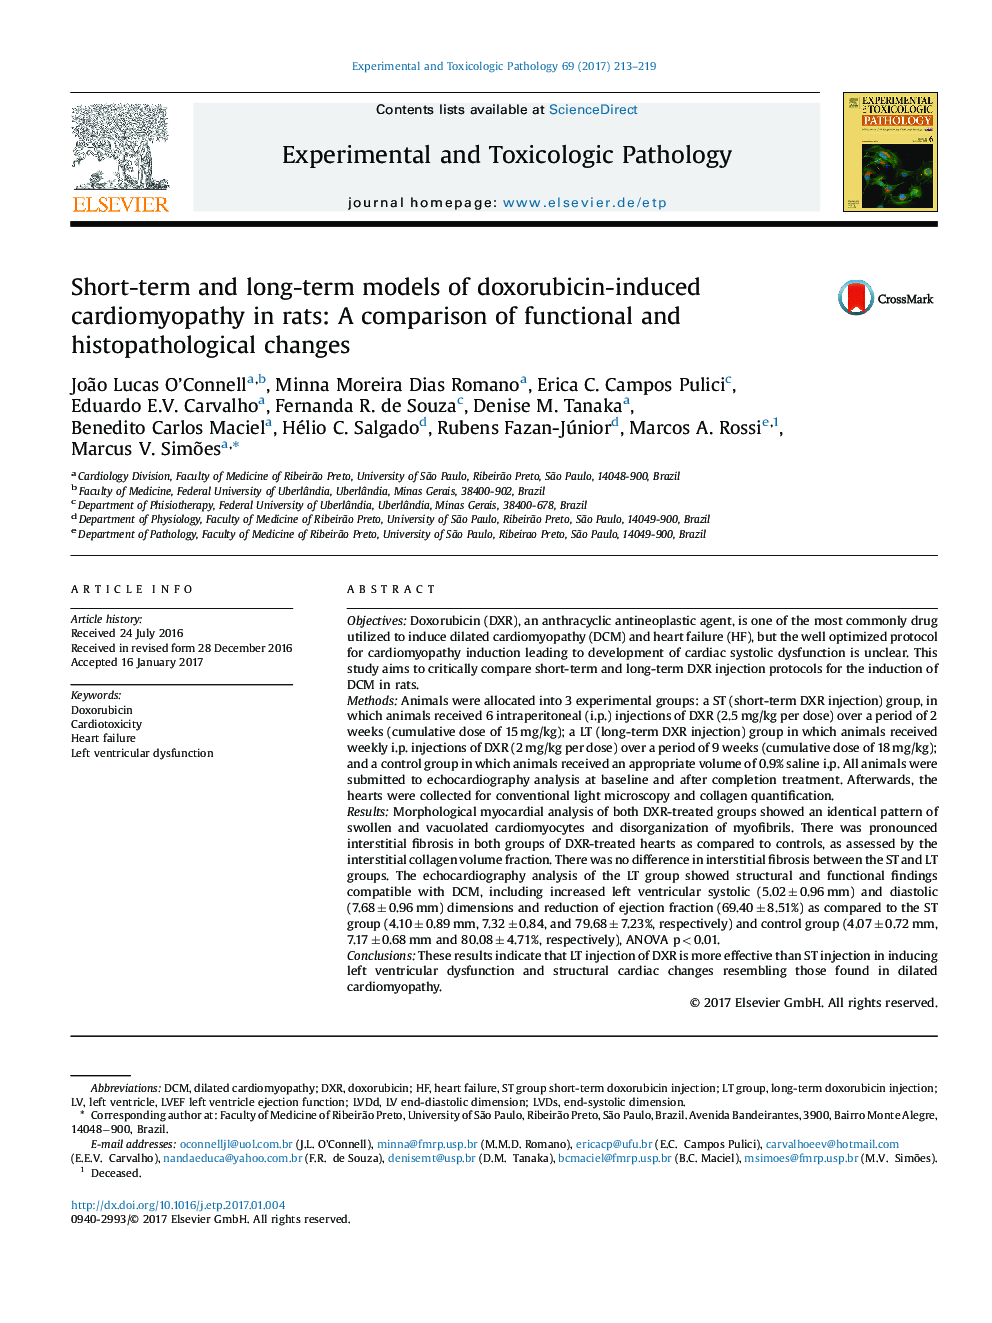 مدل های کوتاه مدت و بلند مدت کاردیومیوپاتی ناشی از دوکسوروبیسین در موش صحرایی: مقایسه تغییرات عملکردی و هیستوپاتولوژیک 